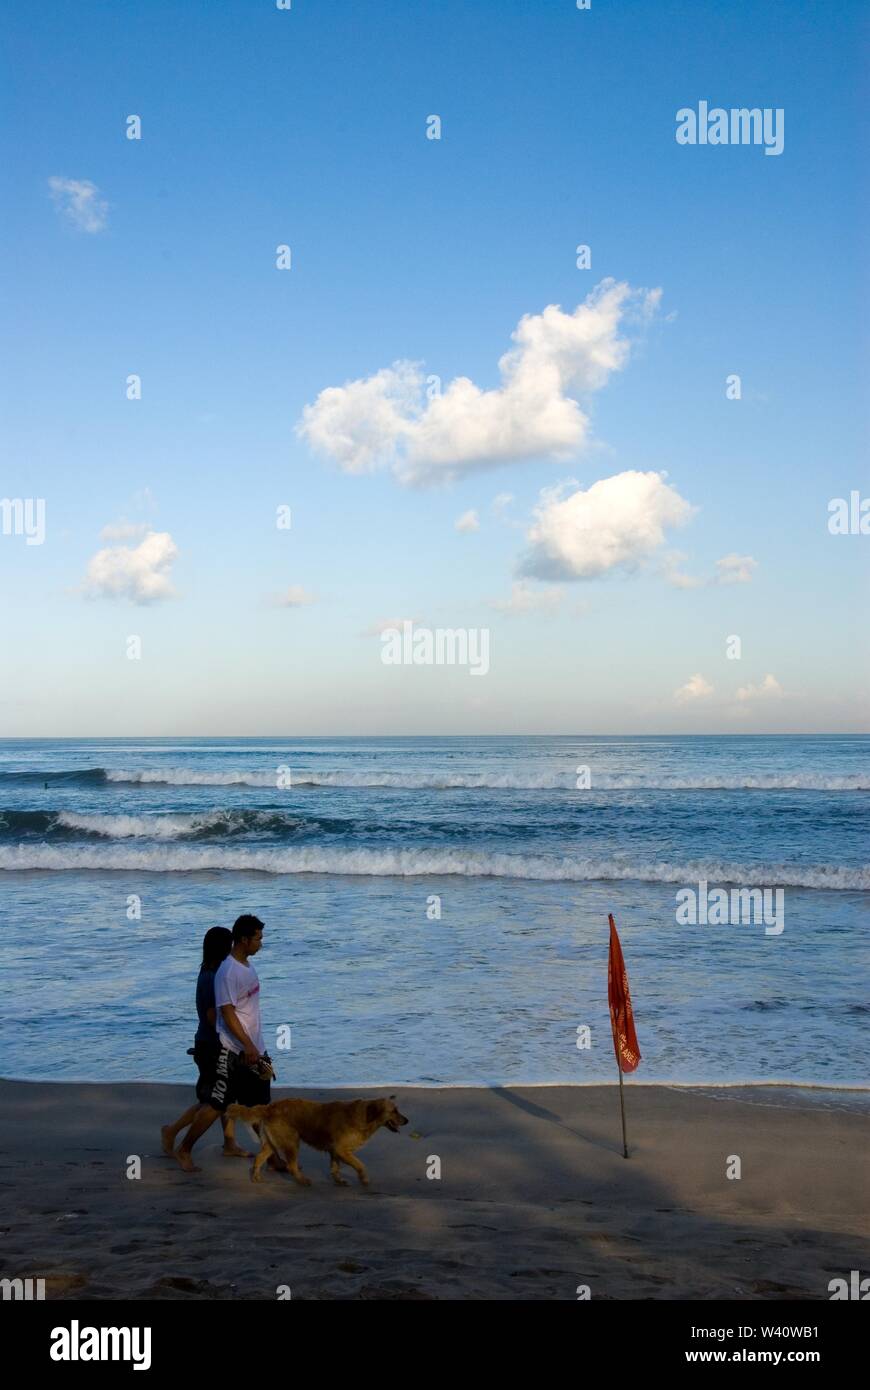 La spiaggia di Kuta Beach, Bali, Indonesia - Giugno 2019 : la gente a piedi con un cane su una spiaggia con un contrassegno di sicurezza. Foto Stock